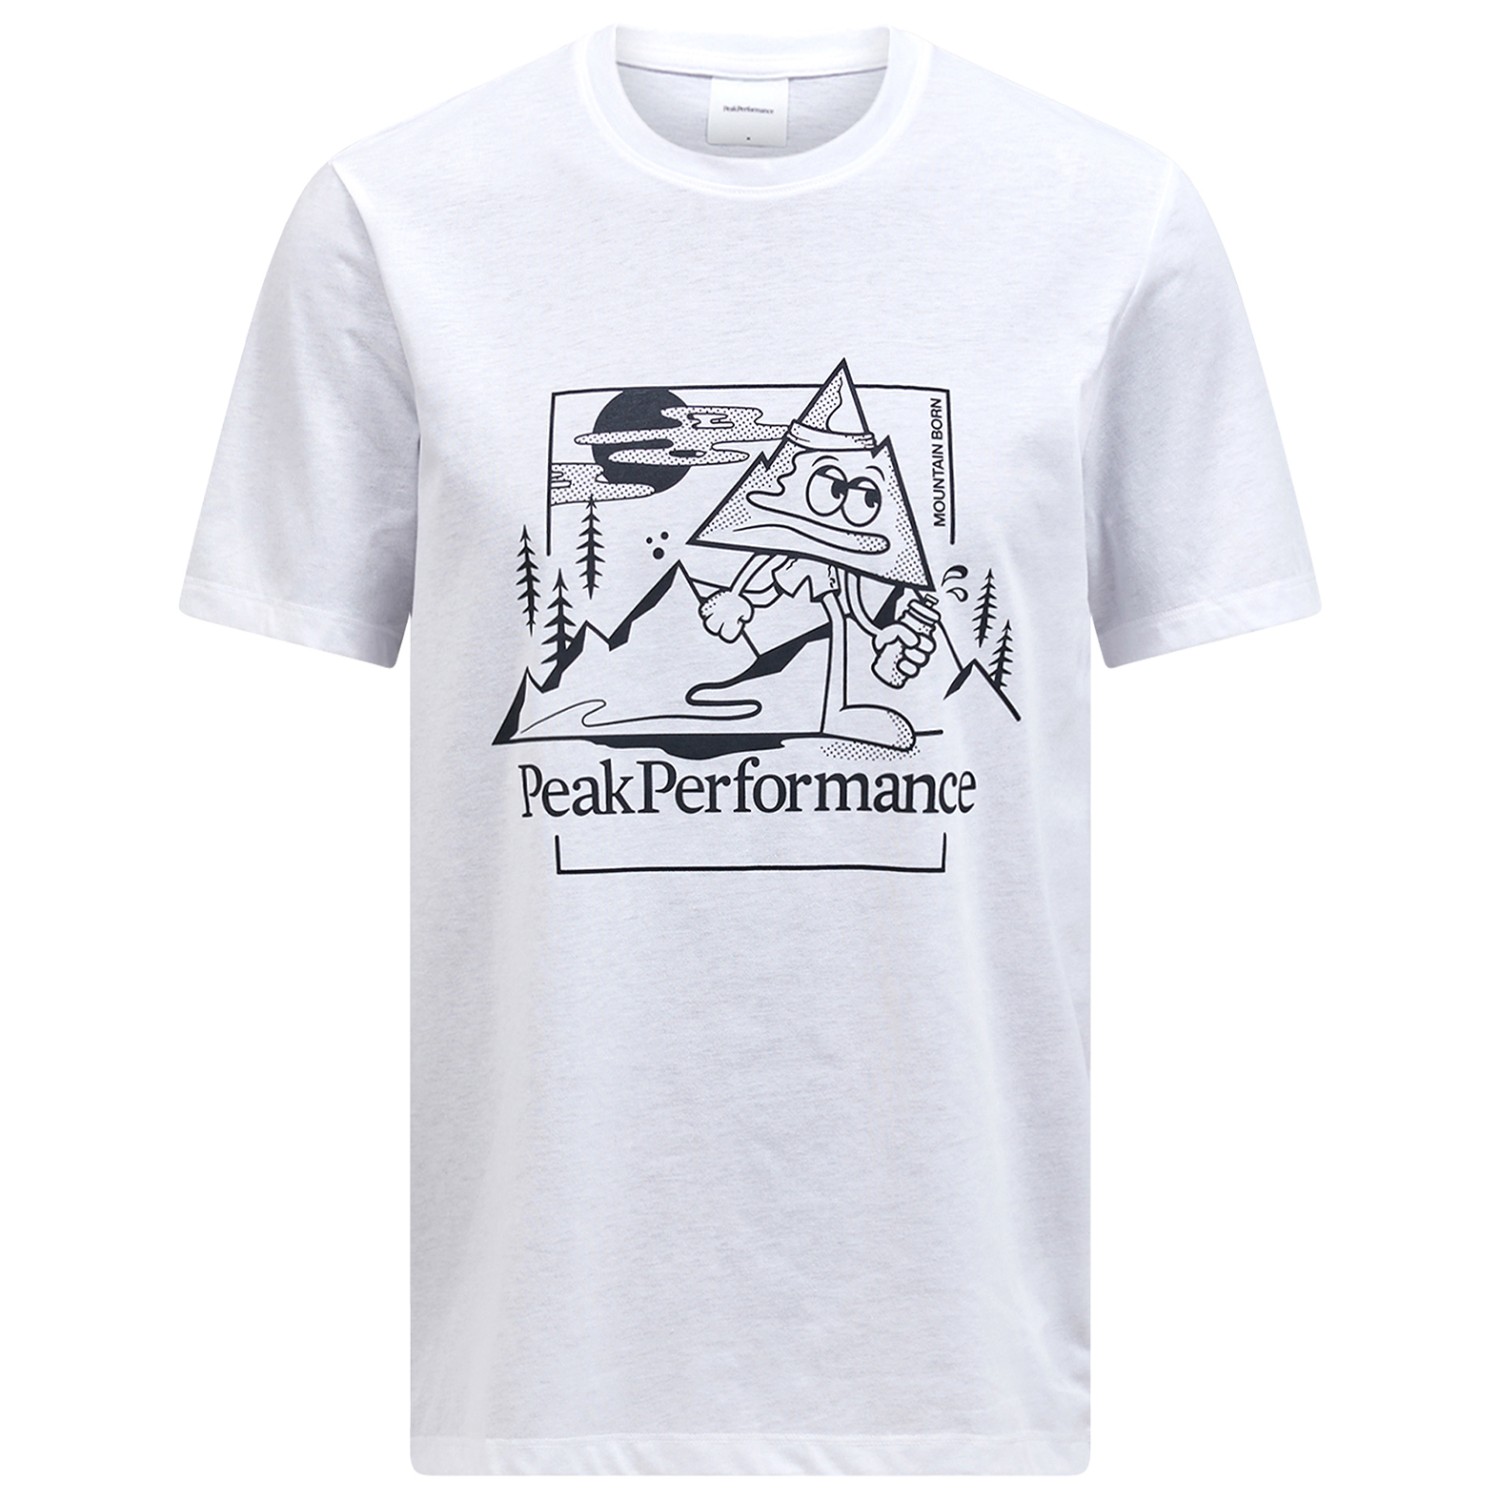 Функциональная рубашка Peak Performance Explore Graphic Tee, белый jonas brothers 90s graphic tee